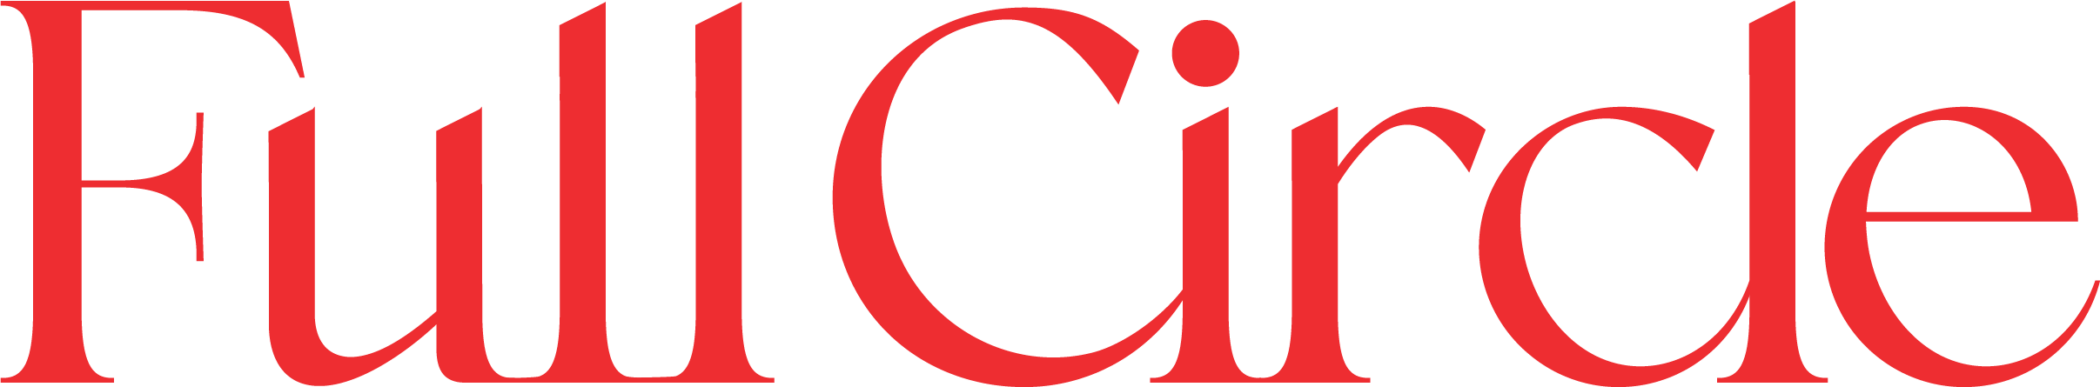 Full Circle coaching logo